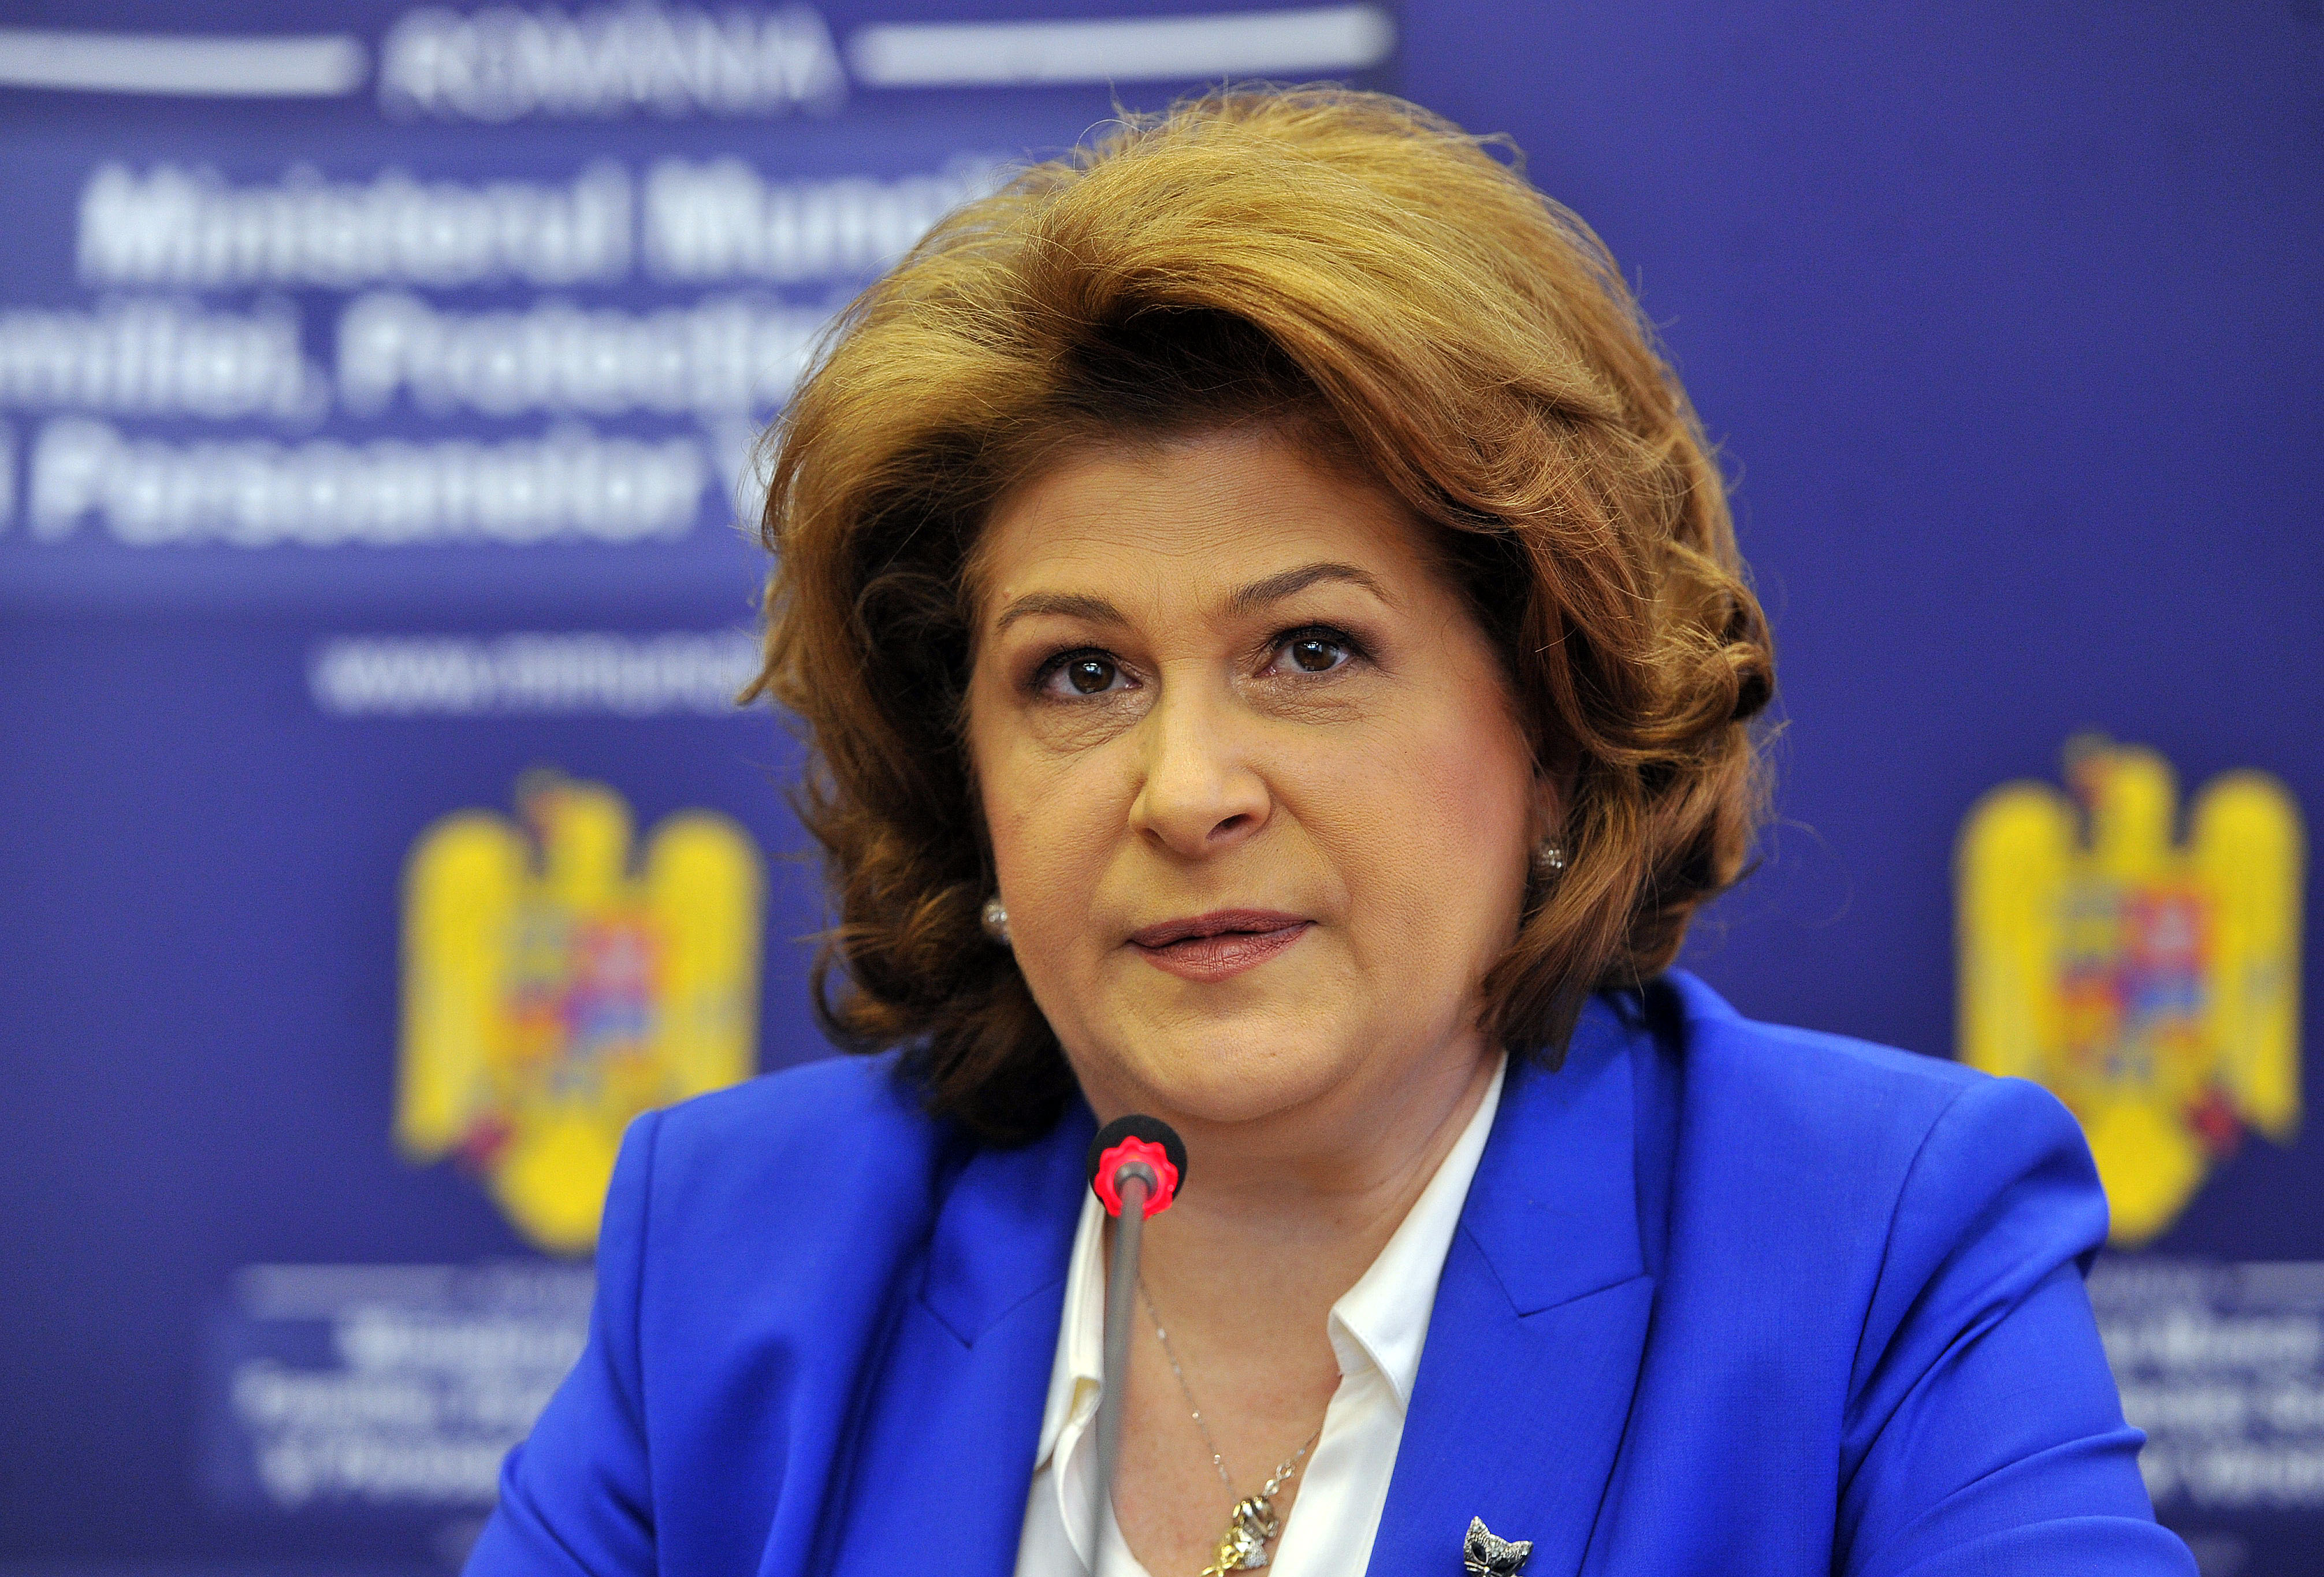 Rovana Plumb este un politician român, membru al Partidului Social Democrat.